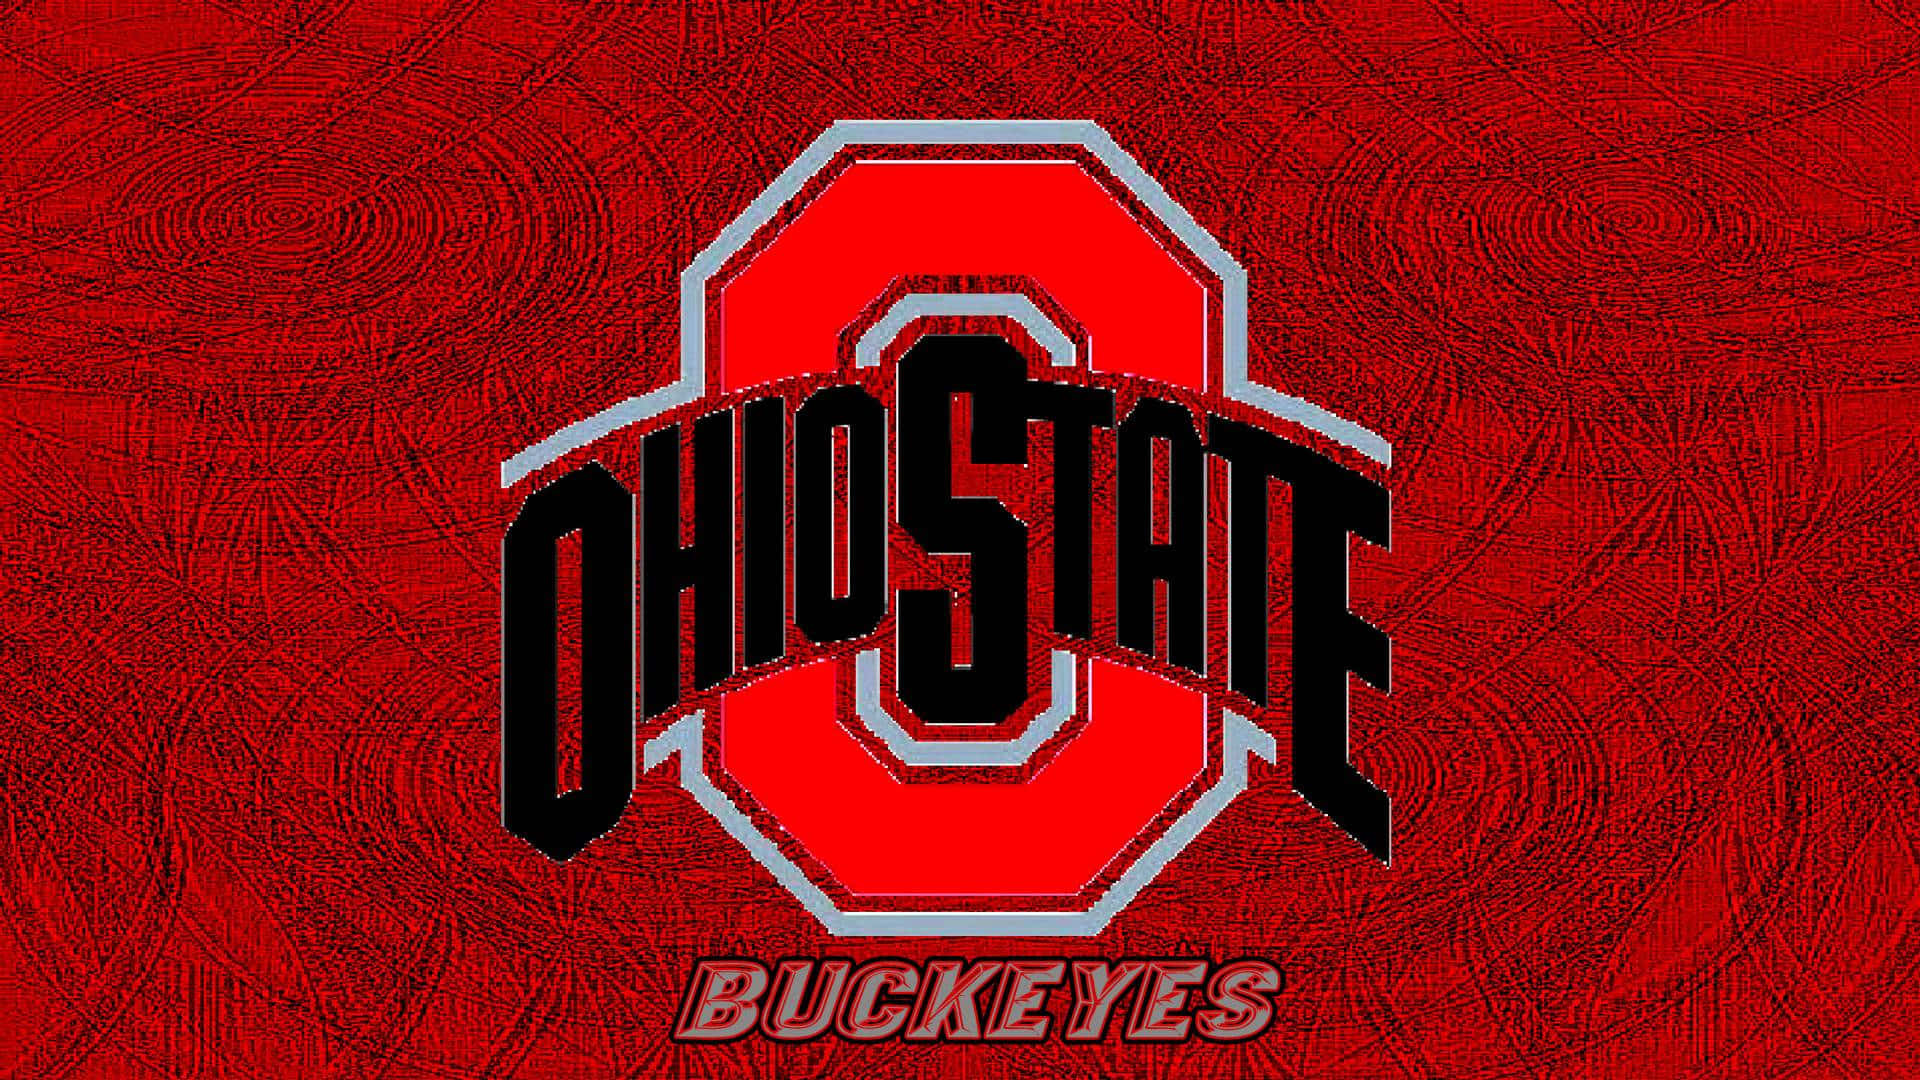 Logotipode Ohio State Con Círculos Concéntricos Fondo de pantalla